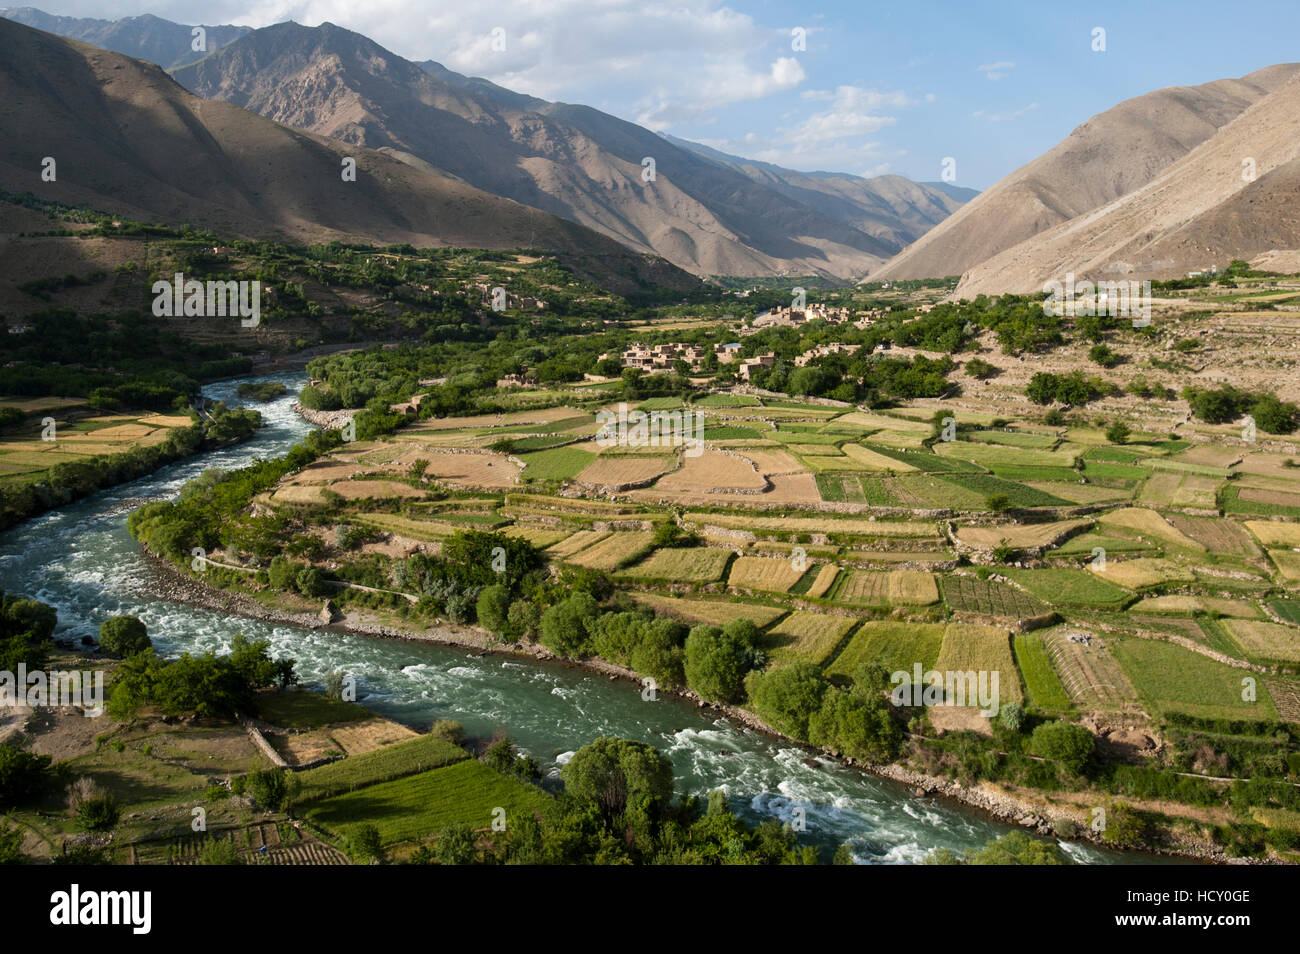 El verde de los campos irrigados contrasta con las áridas colinas, Afganistán Foto de stock